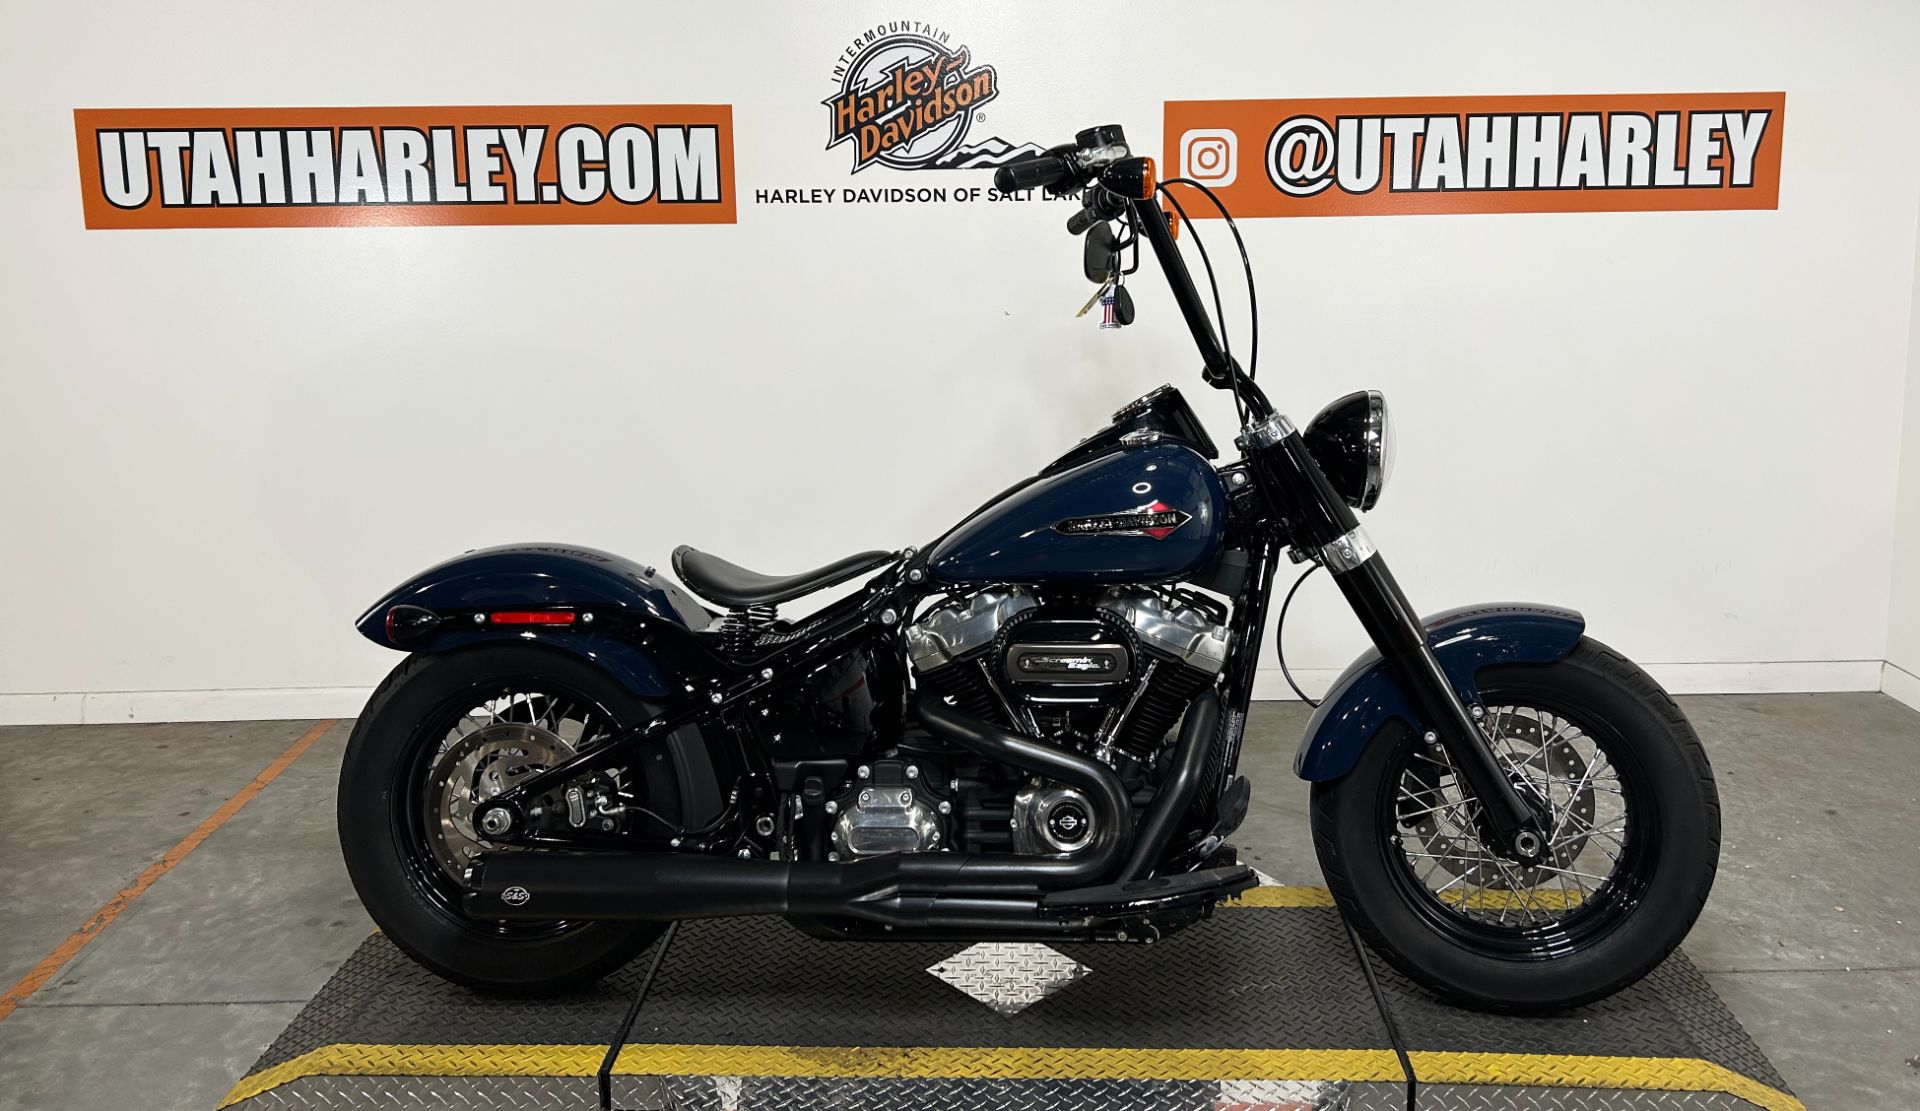 2019 Harley-Davidson Softail Slim® in Salt Lake City, Utah - Photo 1